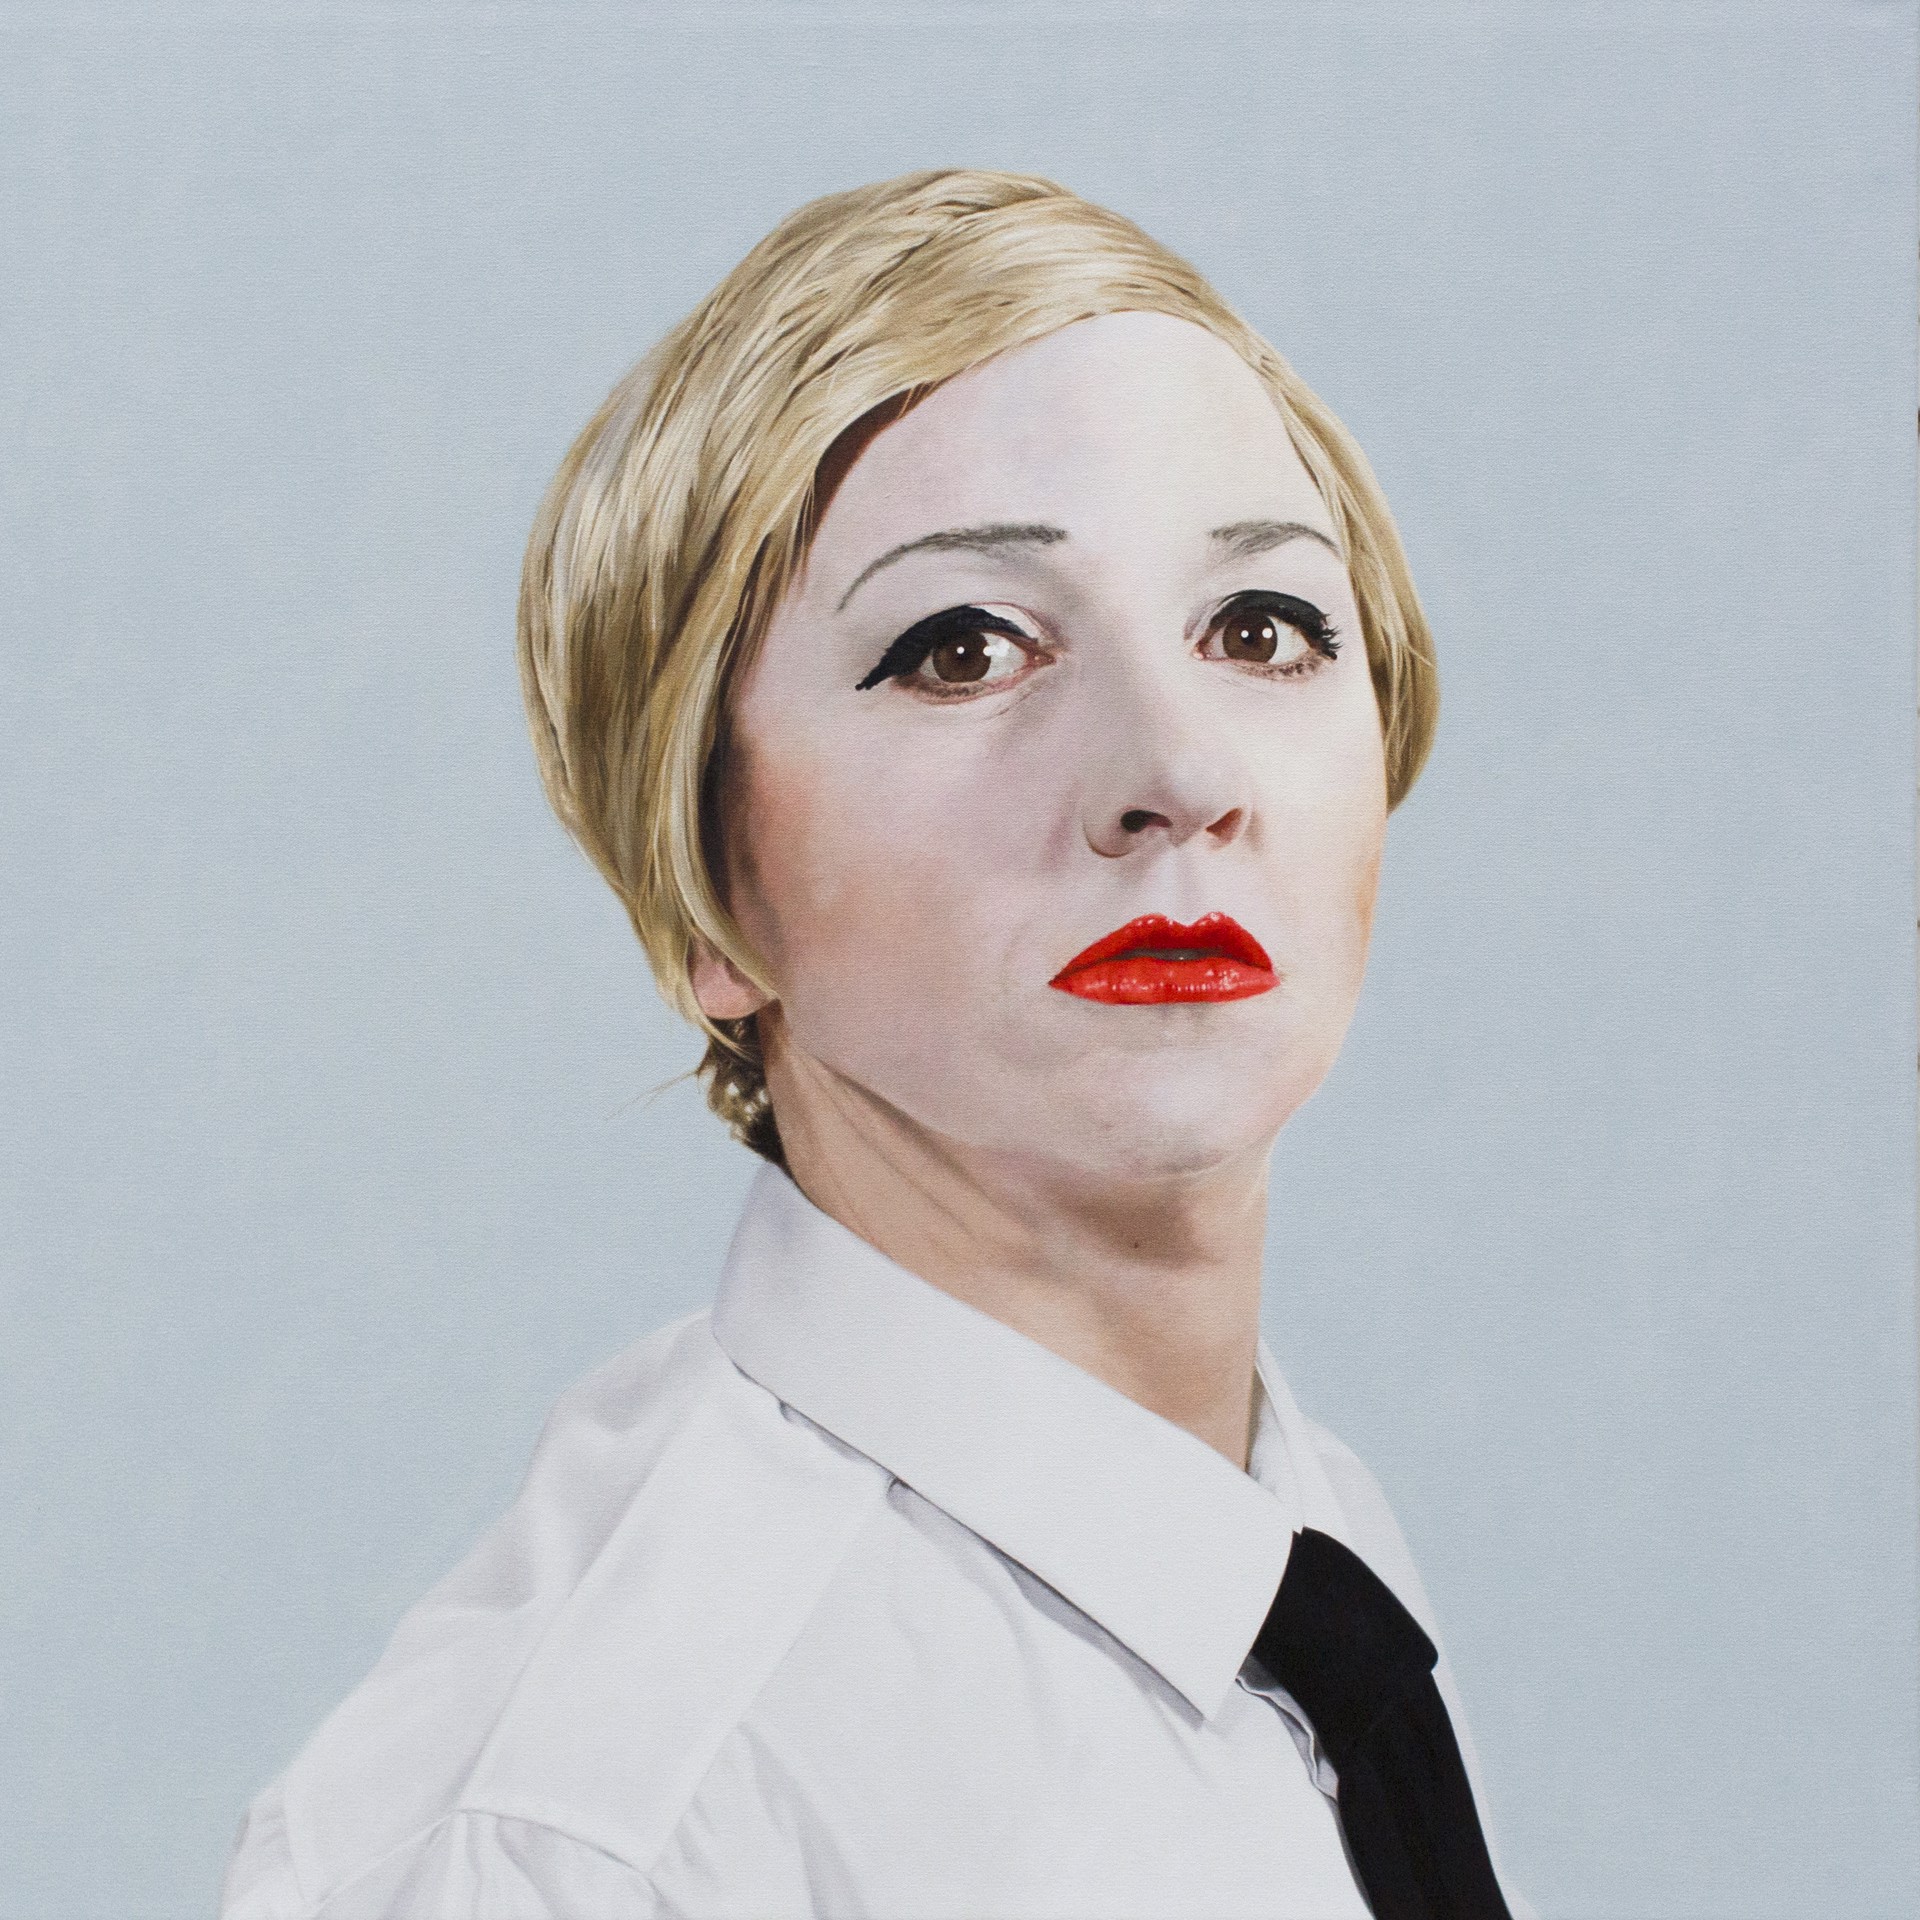 Self Portrait as Andy Warhol by Tiffany Sage